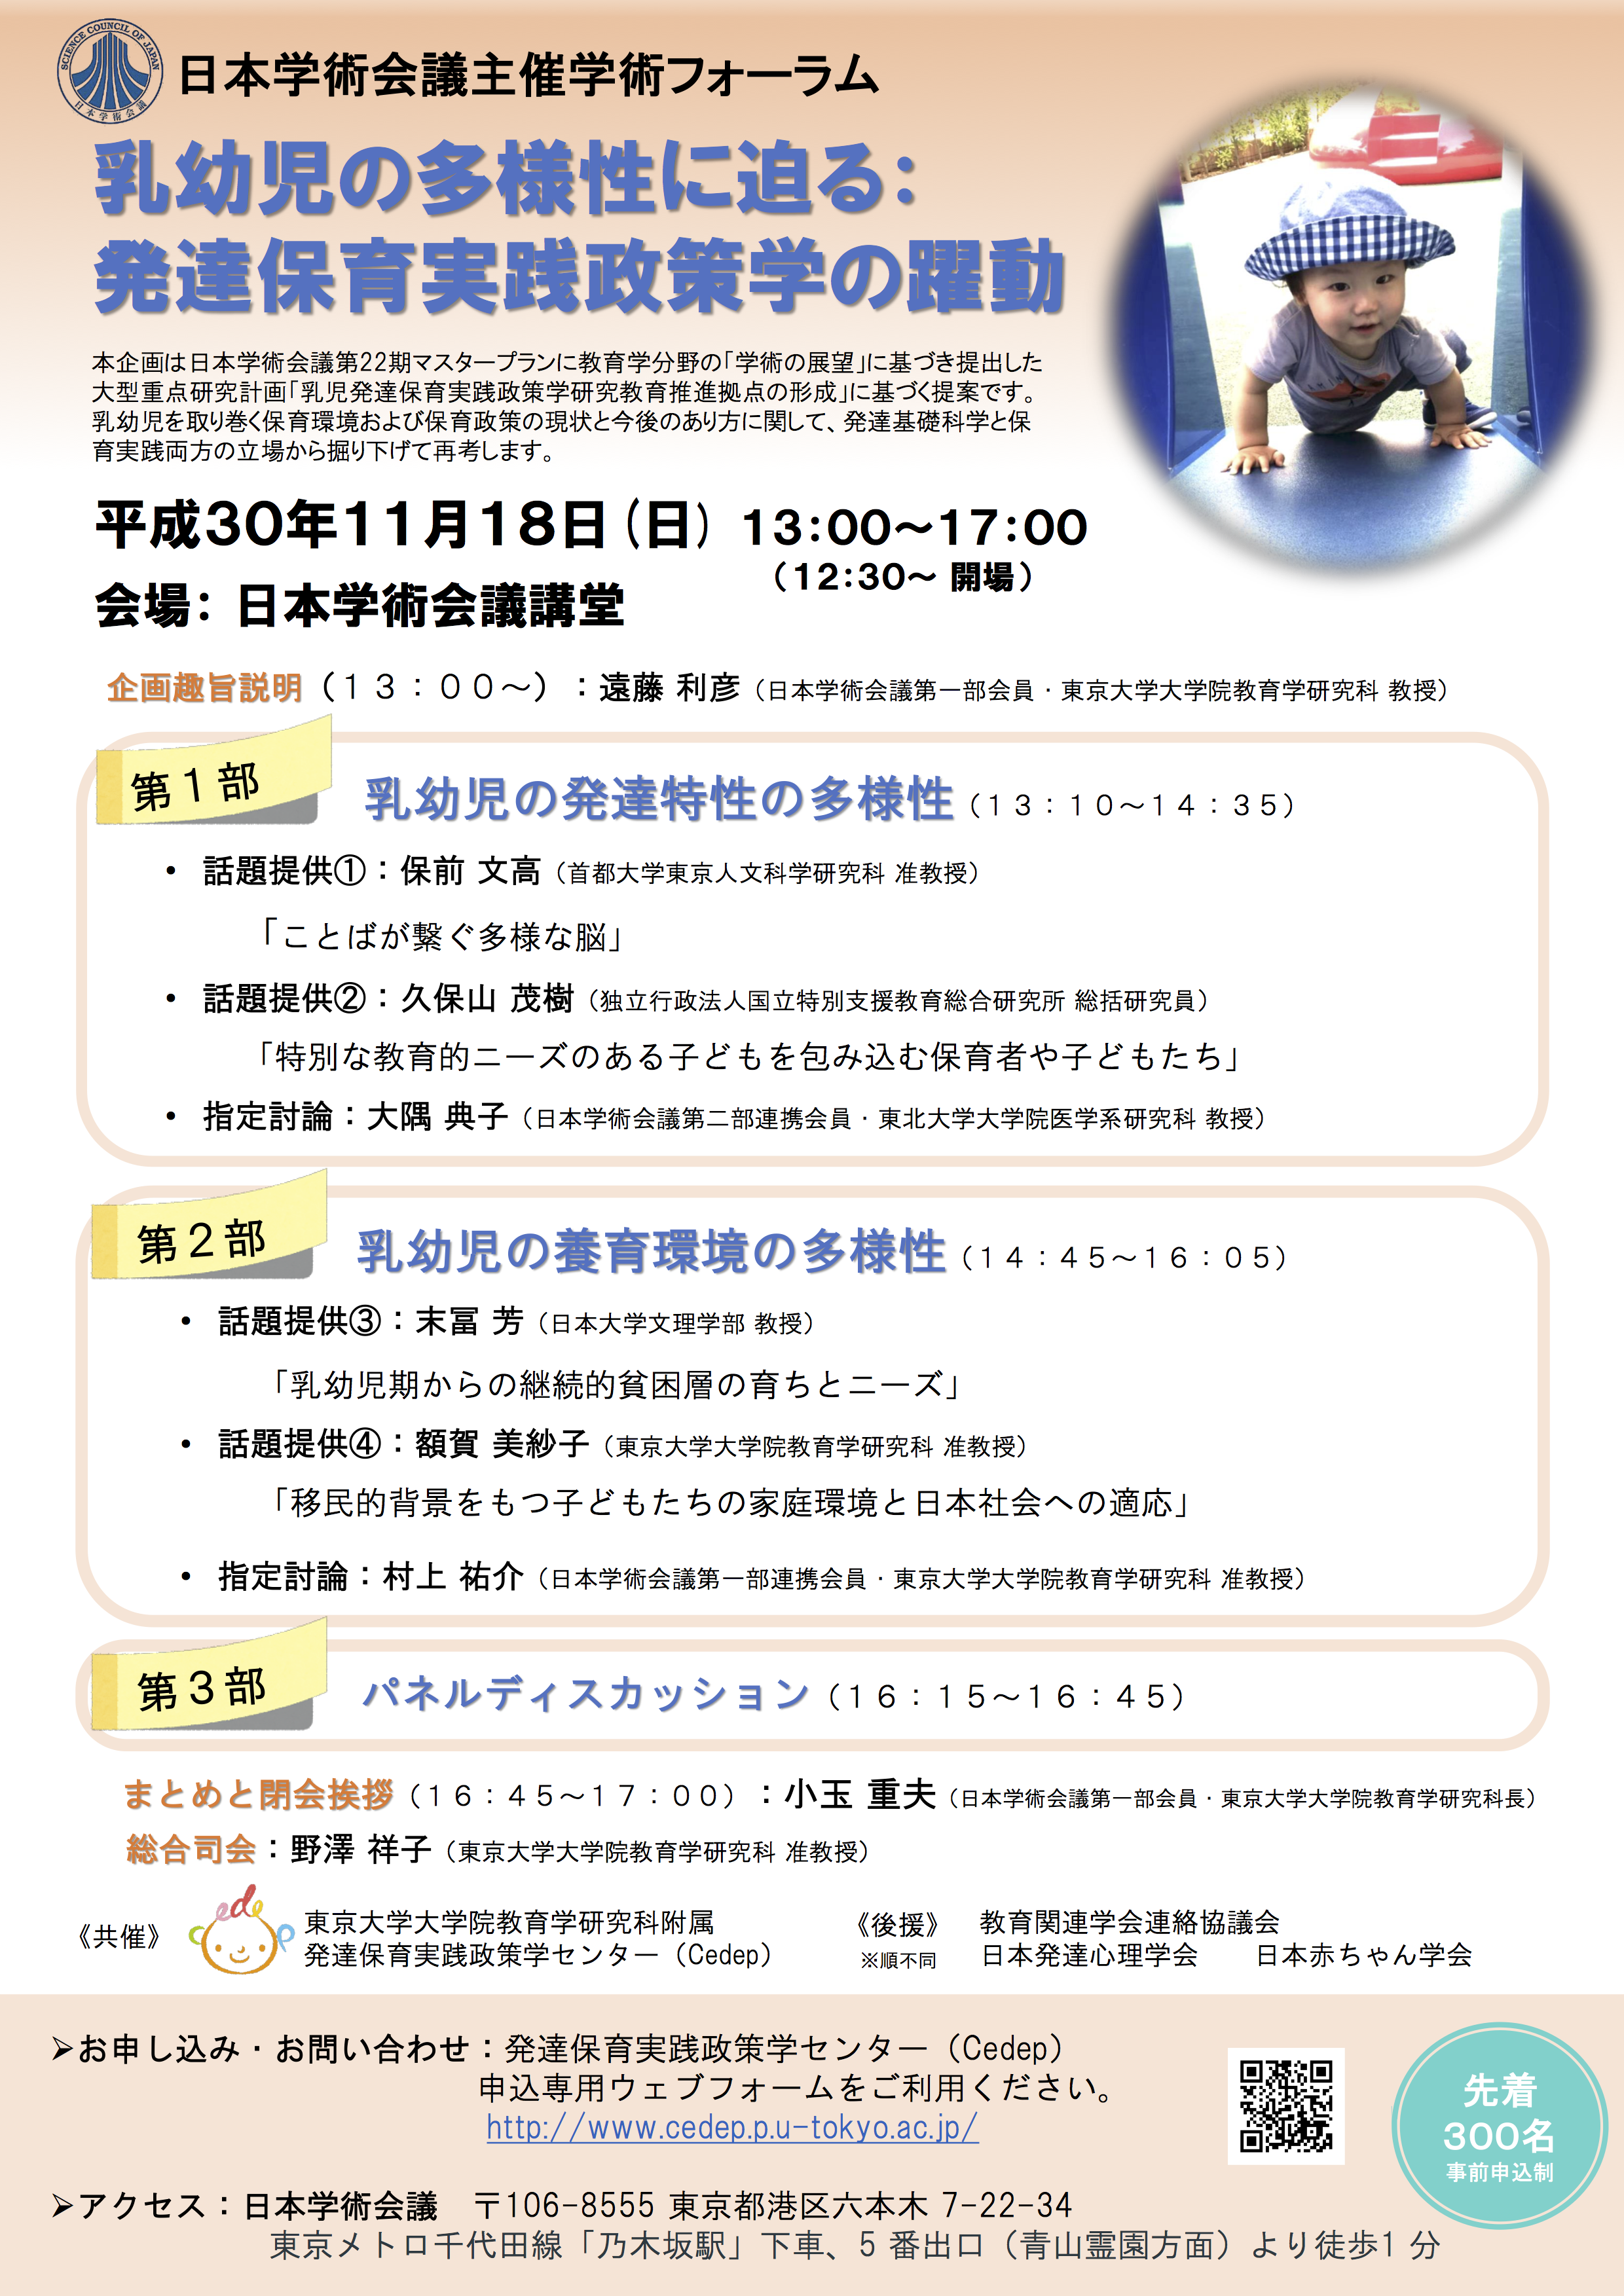 日本学術会議主催学術フォーラム「乳幼児の多様性に迫る：発達保育実践政策学の躍動」